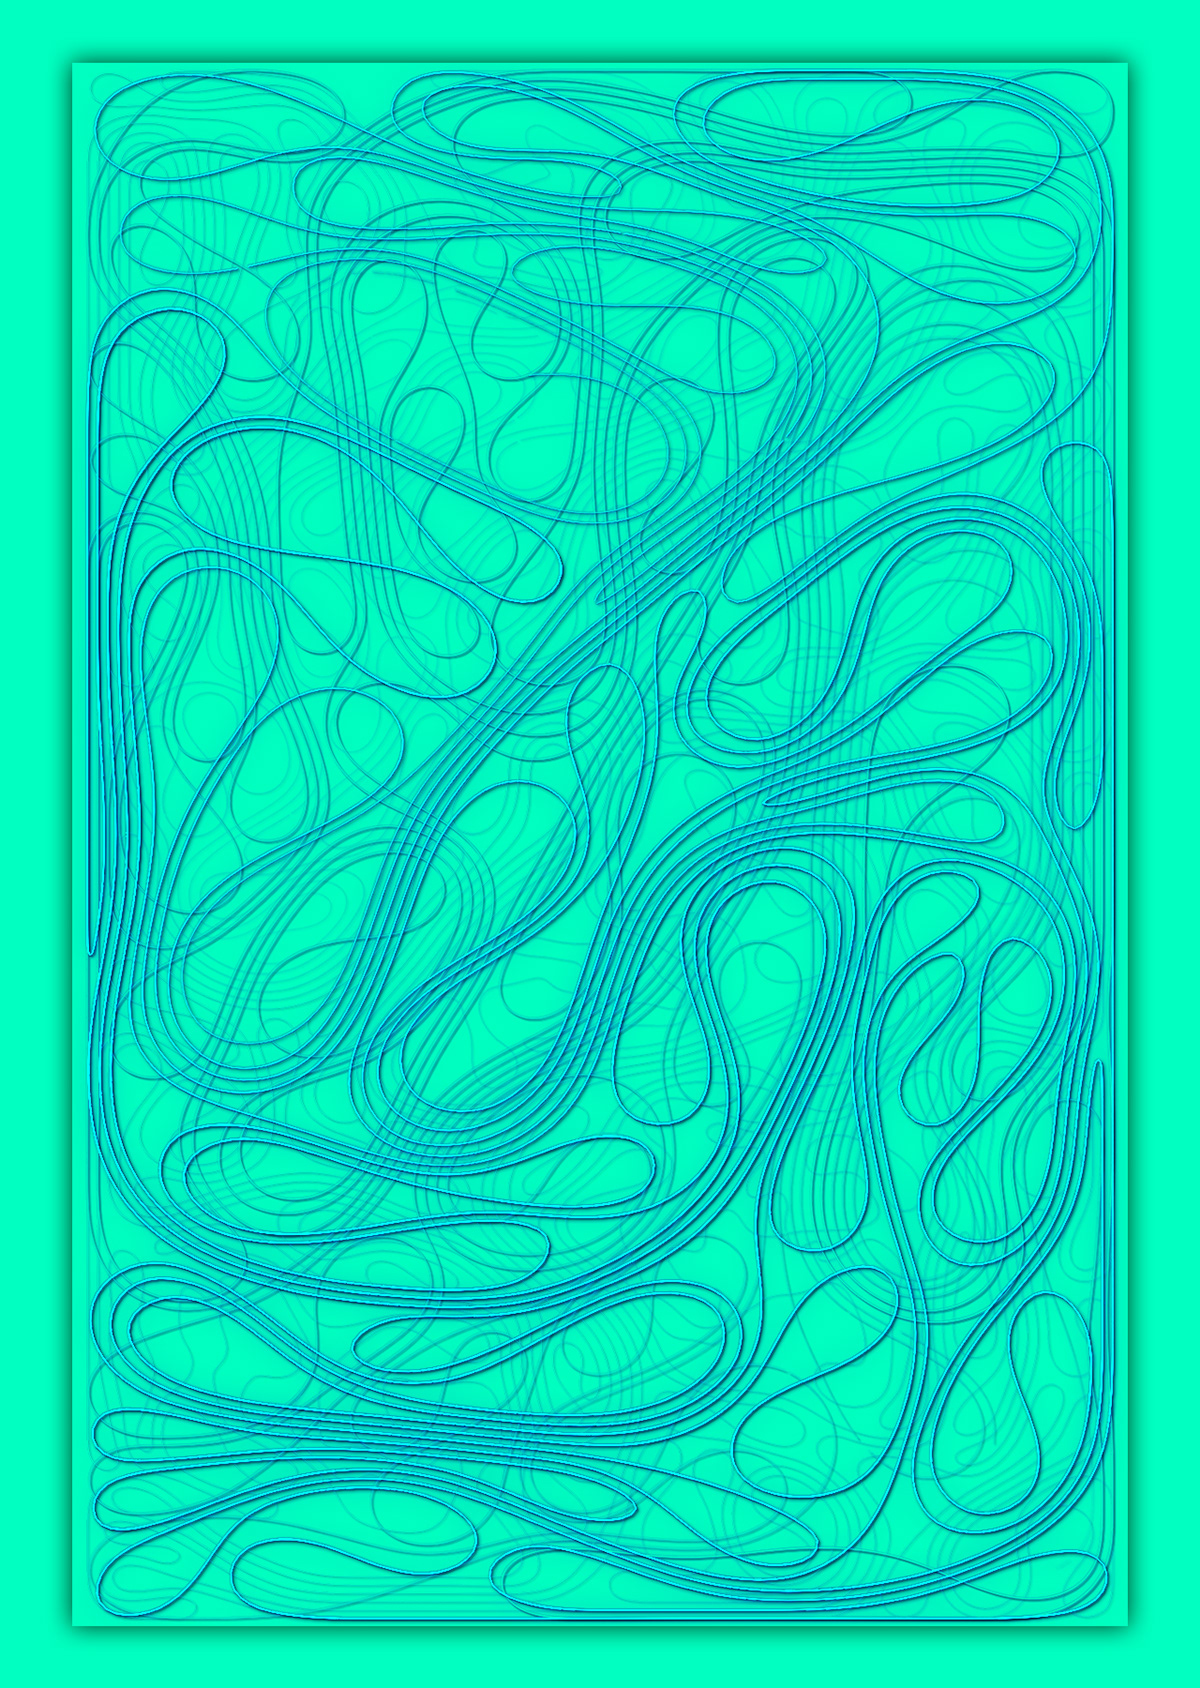 3dart art colorful fractal generative lineart Modernart wireart abstract Digital Art 